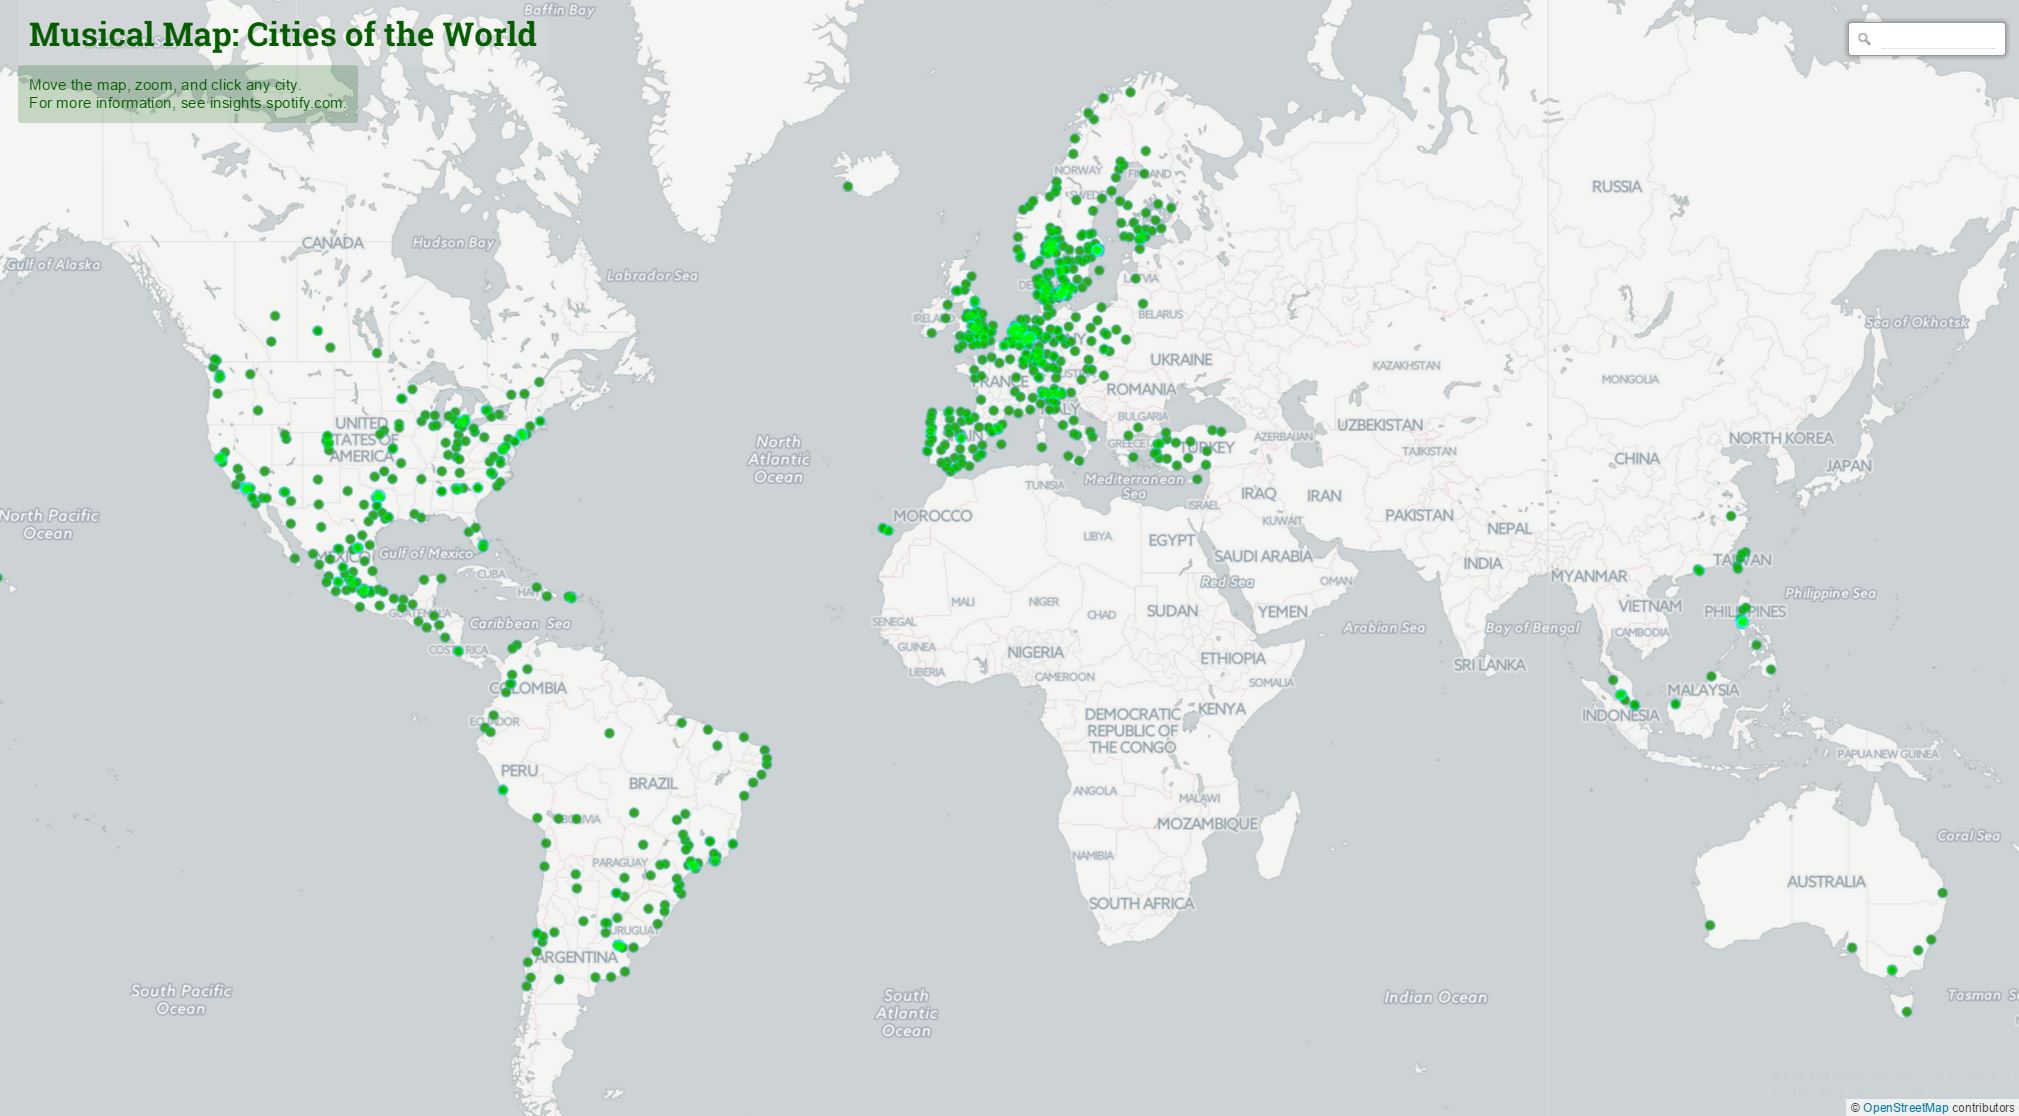 Spotify lança Mapa Musical do Mundo